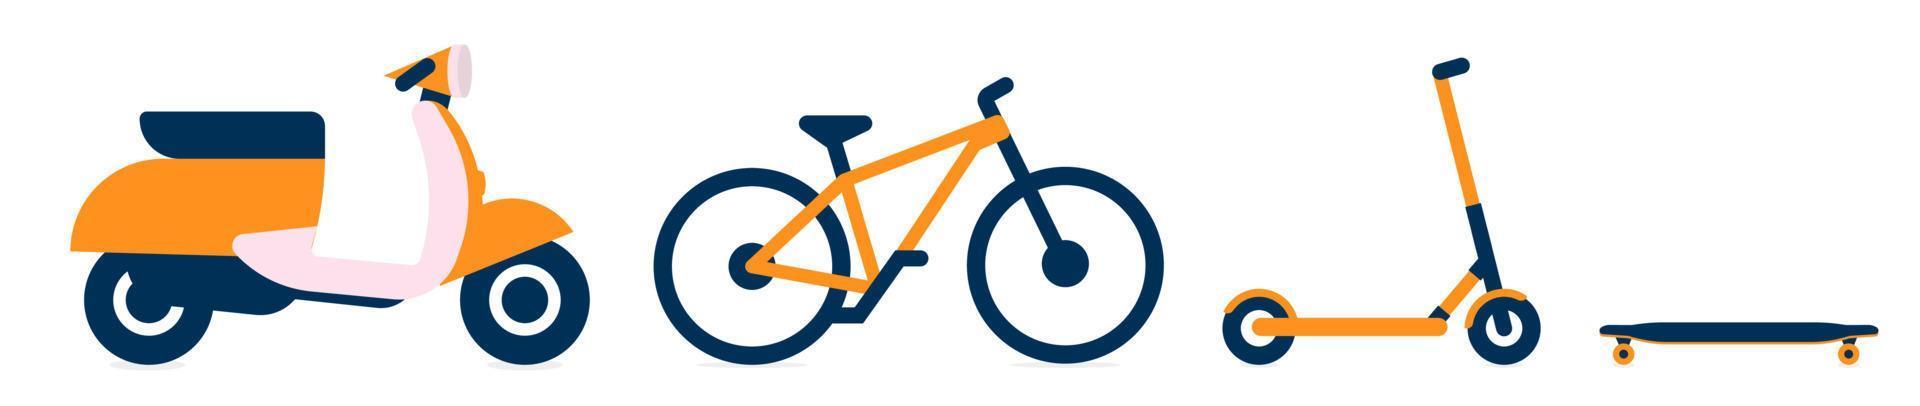 trasporto per il servizio di consegna cibo, set di icone di bici, bicicletta, monopattino e longboard. icone di trasporto elettrico per il servizio di noleggio. illustrazione vettoriale isolata.